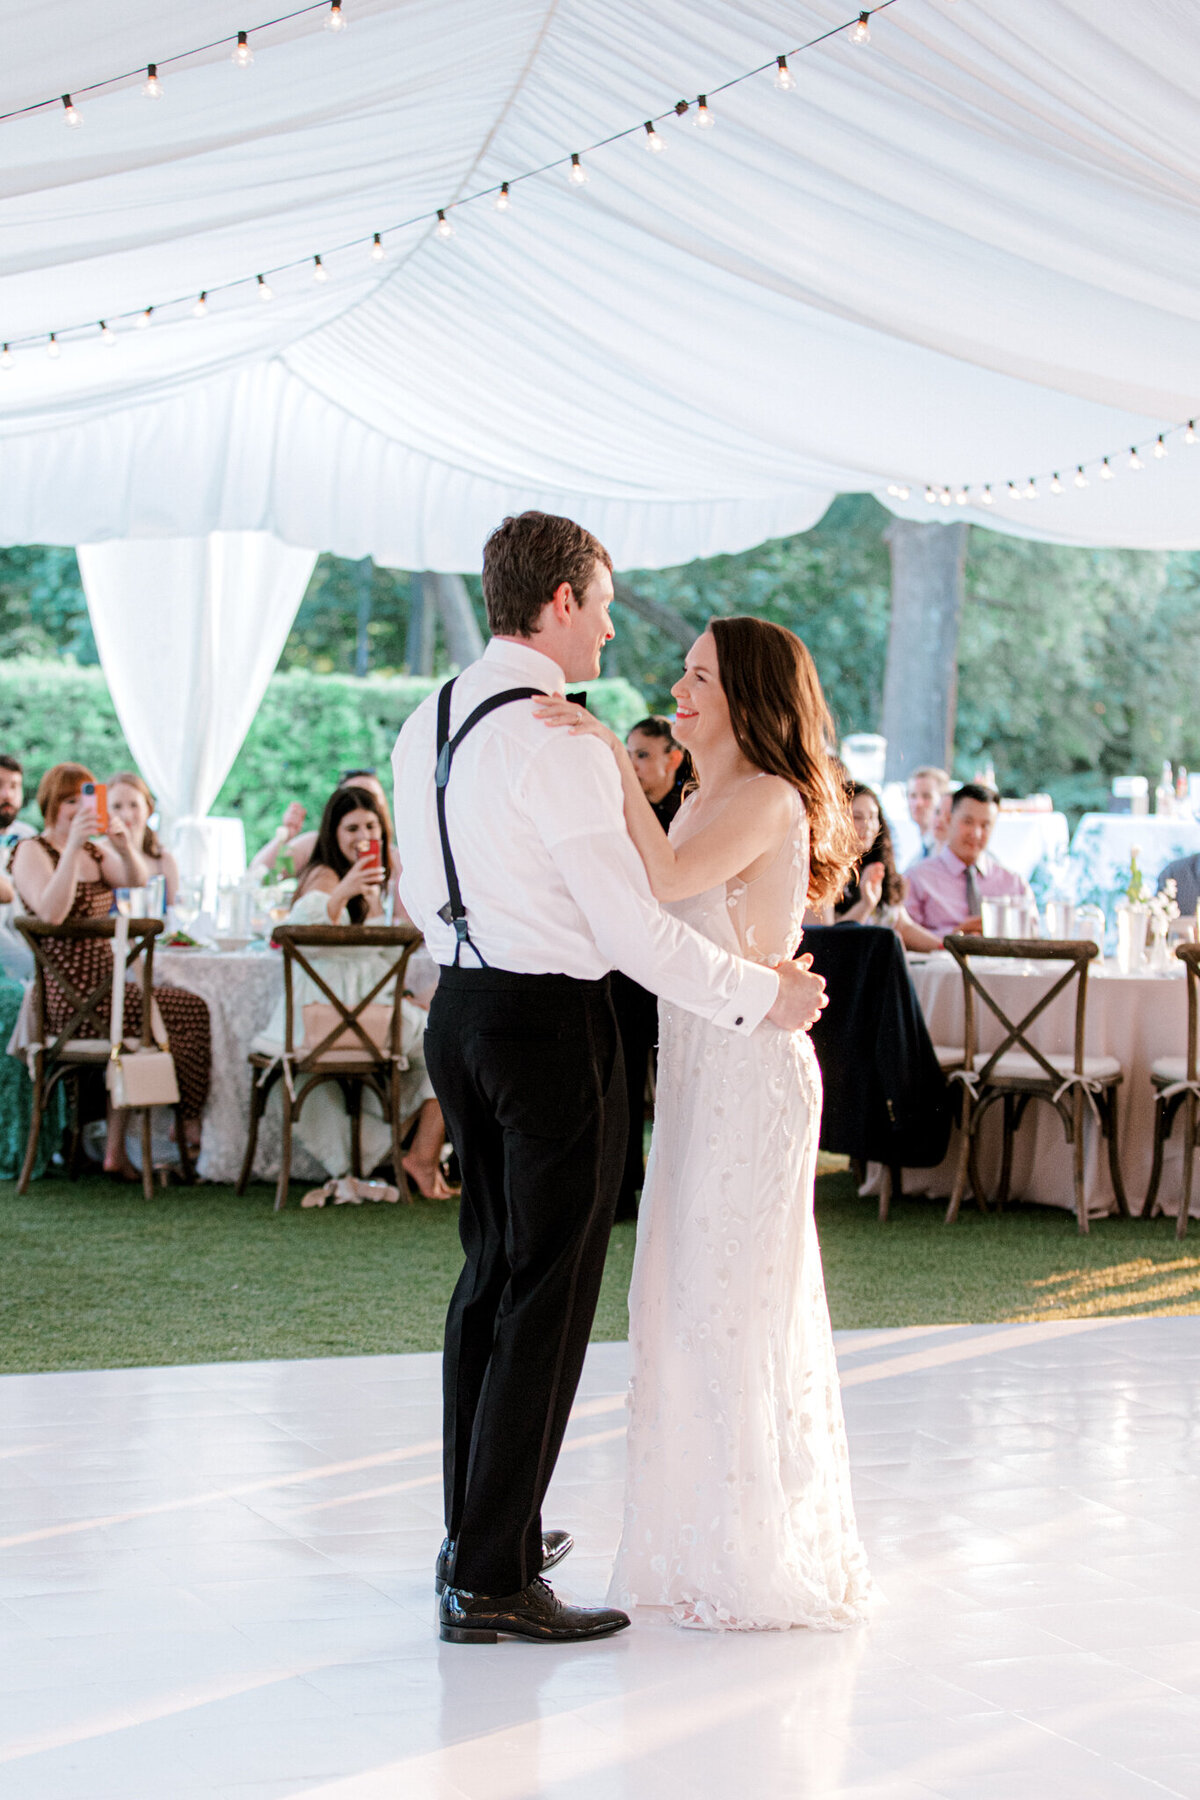 Gena & Matt's Wedding at the Dallas Arboretum | Dallas Wedding Photographer | Sami Kathryn Photography-234